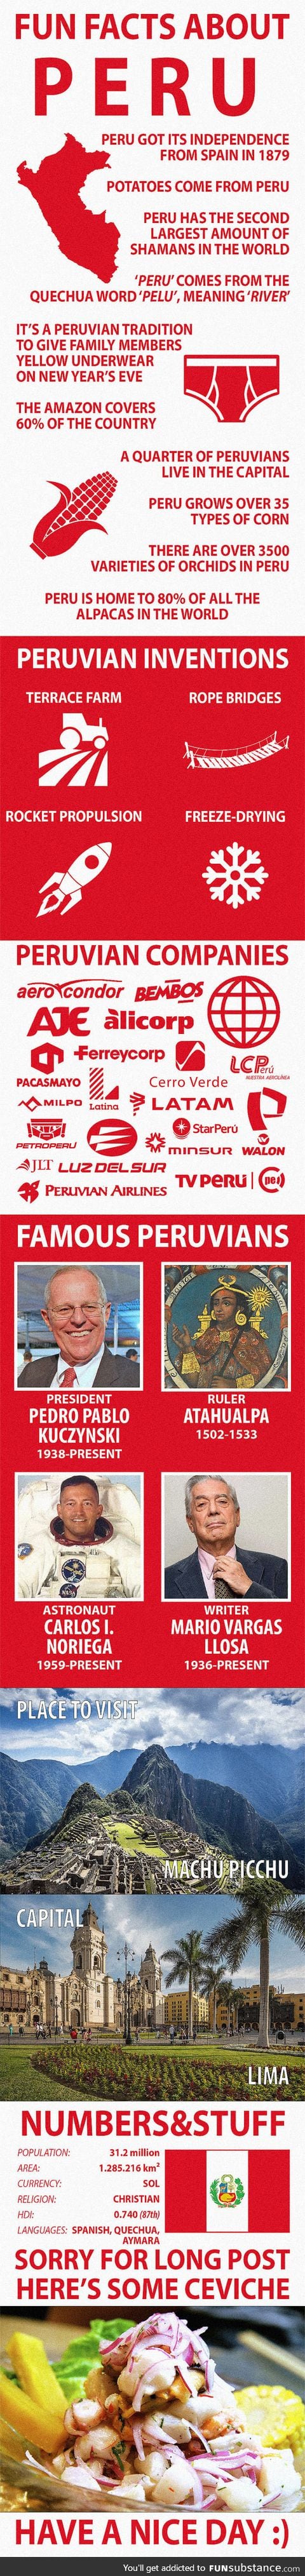 Fun Facts about Peru